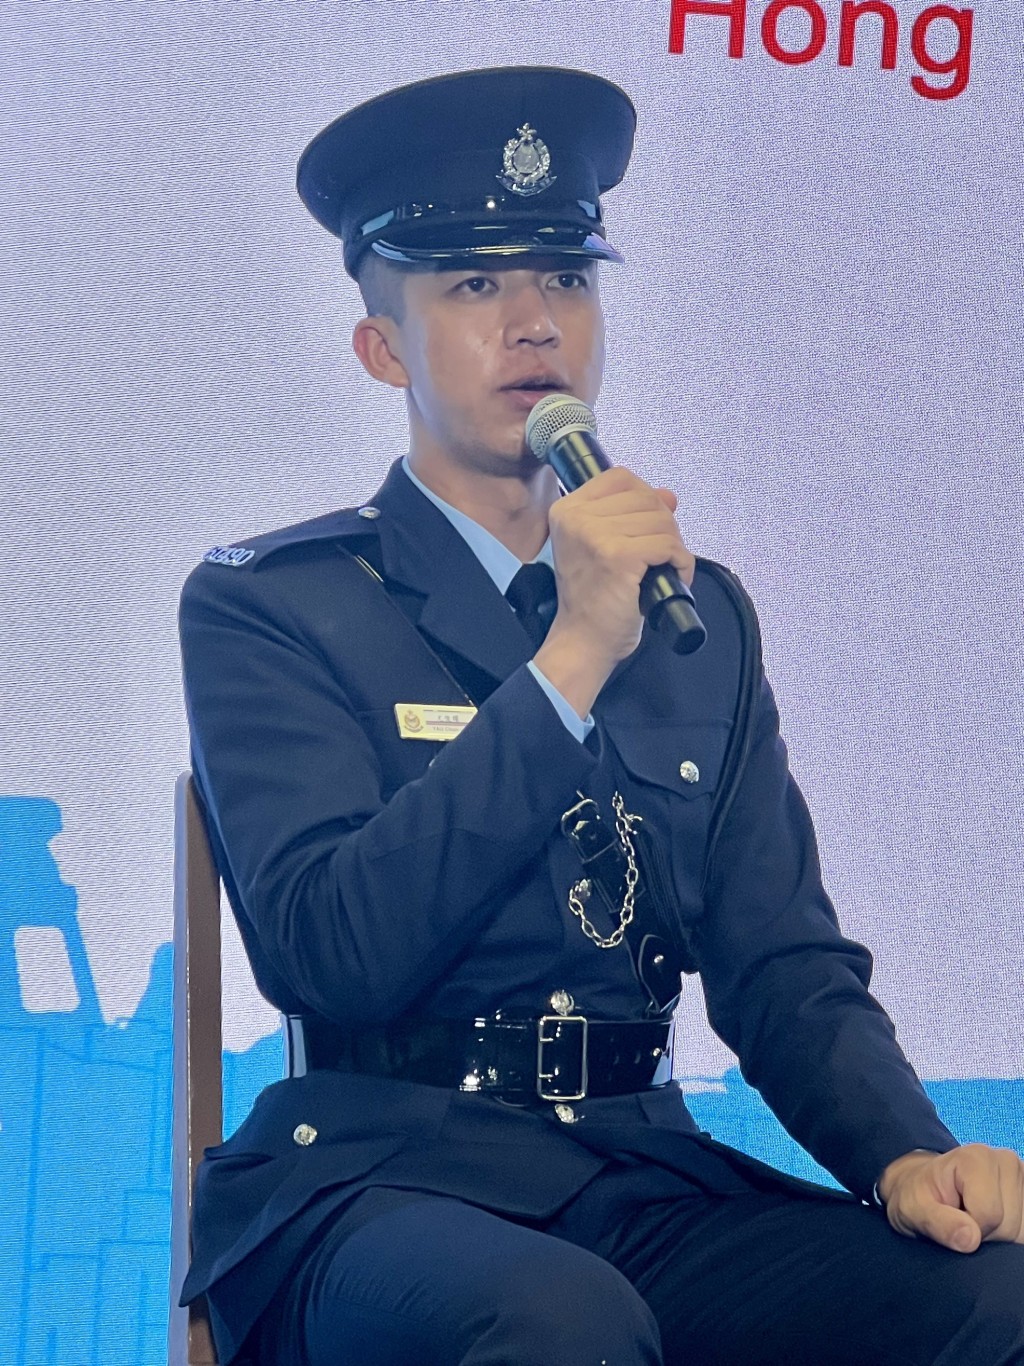 获得薛富杯及银笛奖学警尤俊耀(Ambrose)加入警队前是一名手球教练。